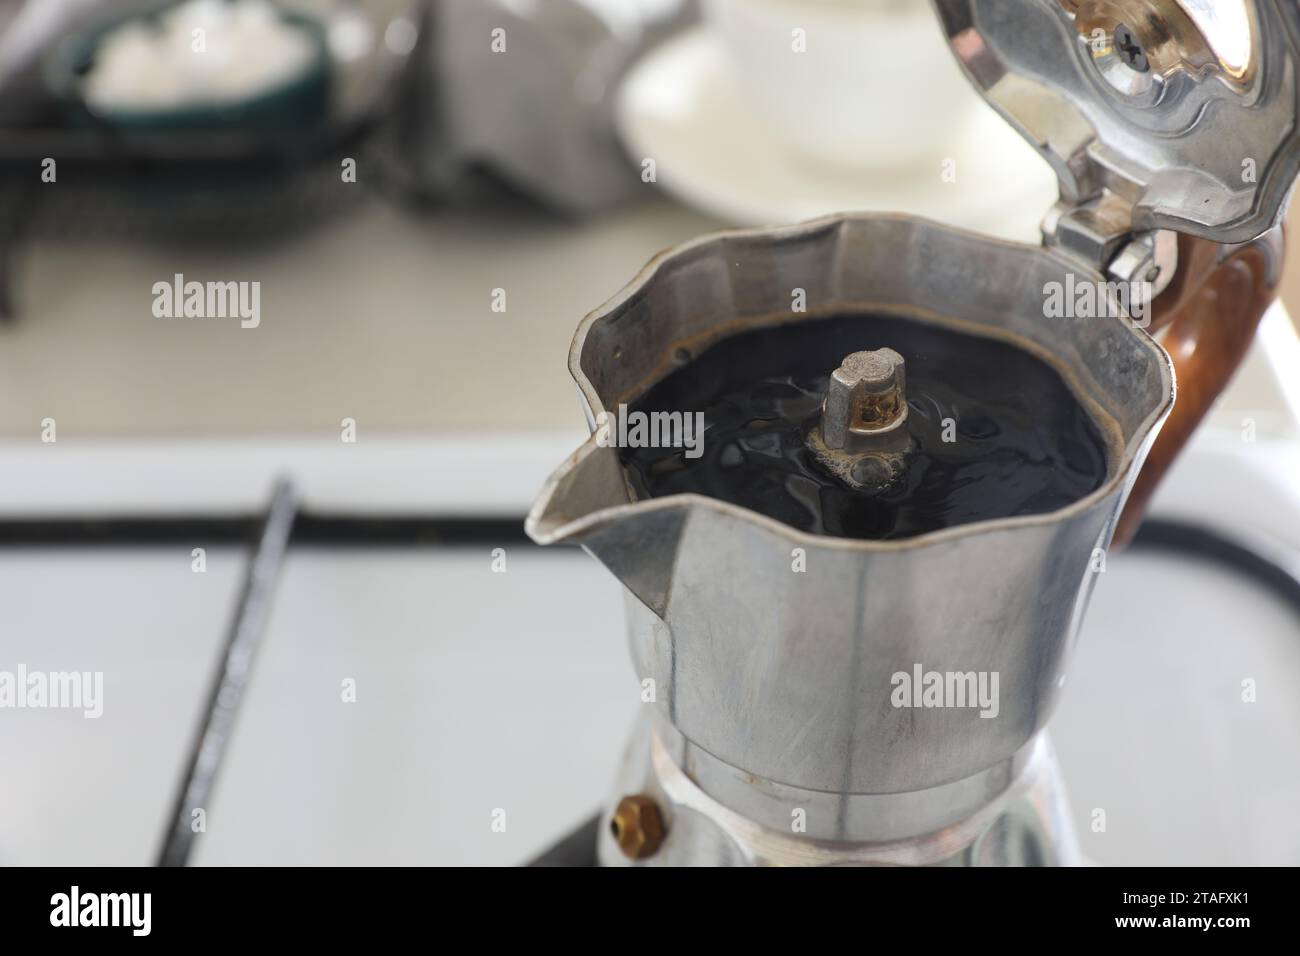 Cafetera italiana de moca sobre la estufa humeando vapor y aroma